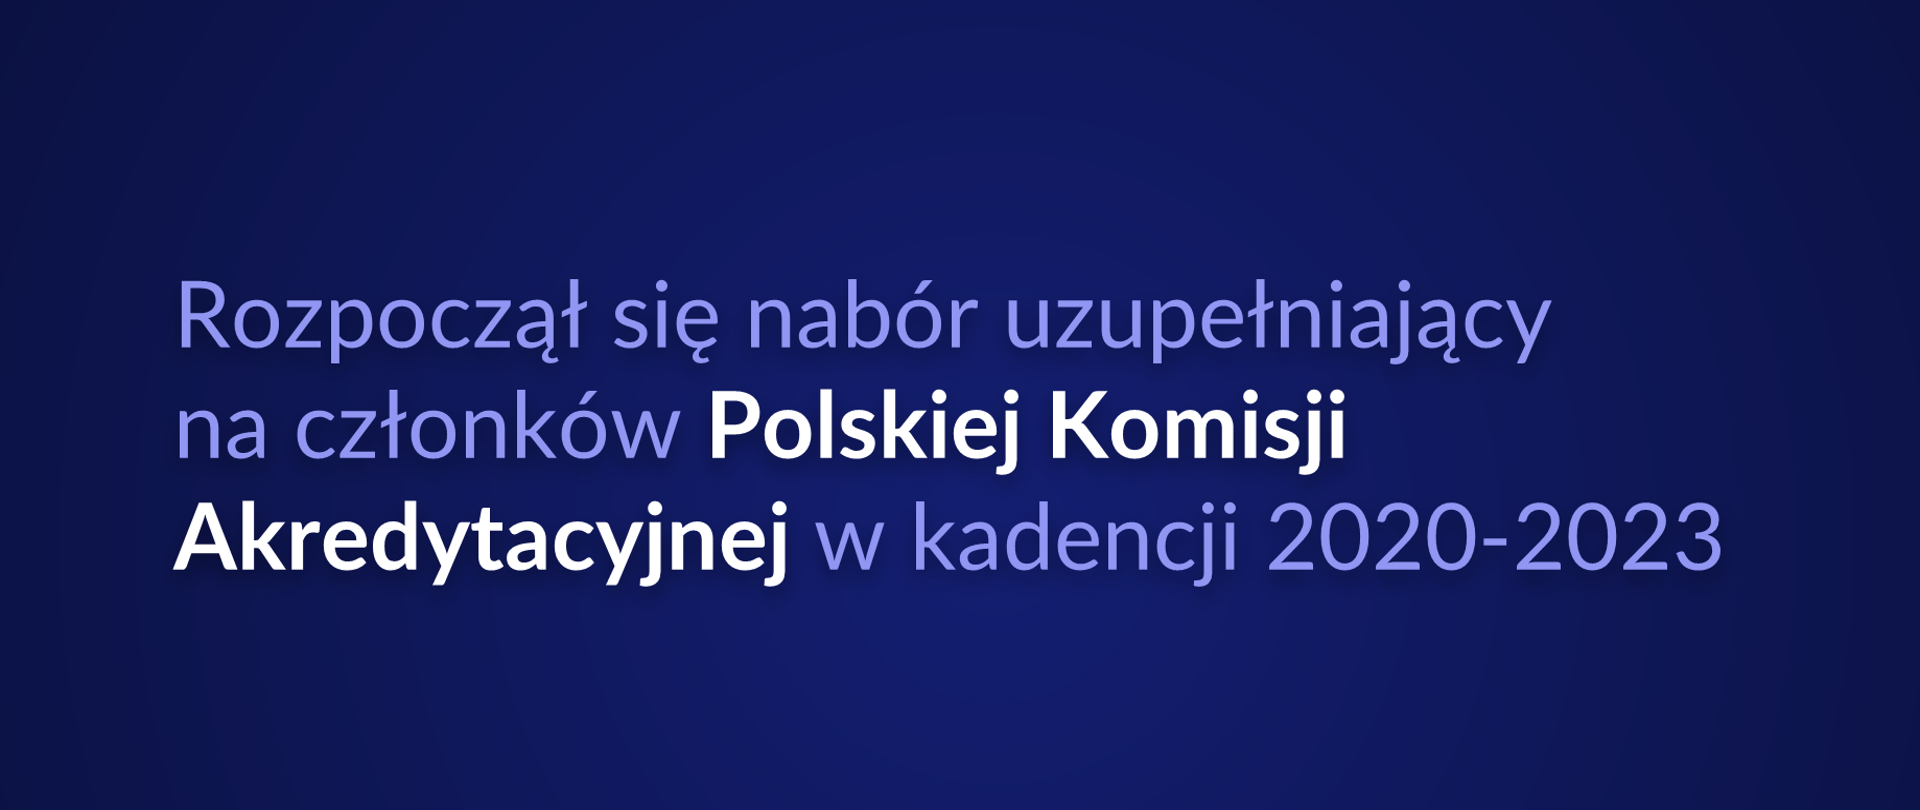 Grafika z tekstem: "Rozpoczął się nabór uzupełniający na członków Polskiej Komisji Akredytacyjnej w kadencji 2020–2023"